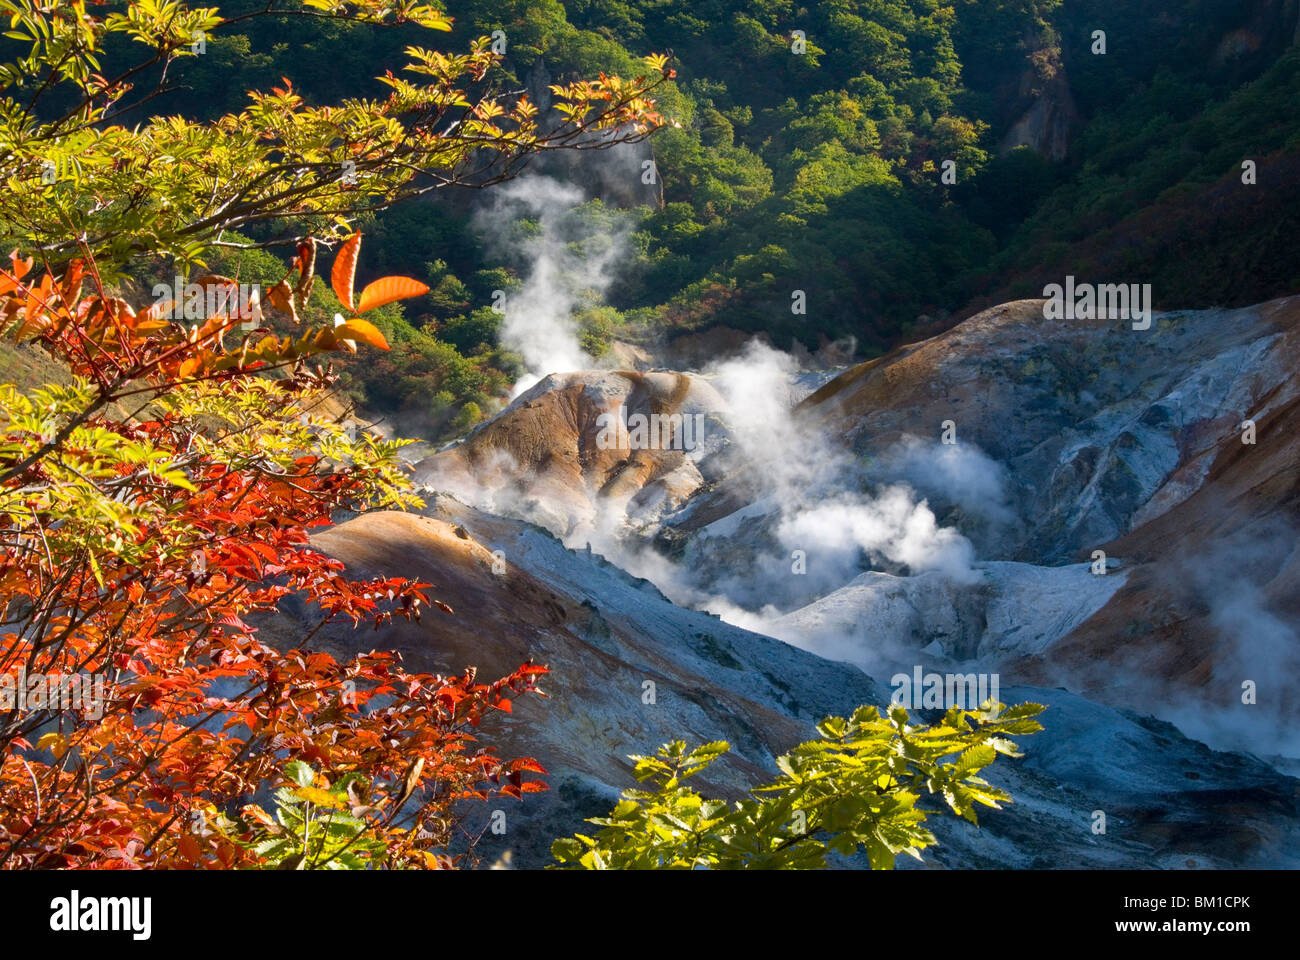 Les fumerolles de vapeur dans la zone géothermique Jigokudani, Noboribetsu Onsen, le Parc National de Shikotsu-Toya, Hokkaido, Japon Banque D'Images